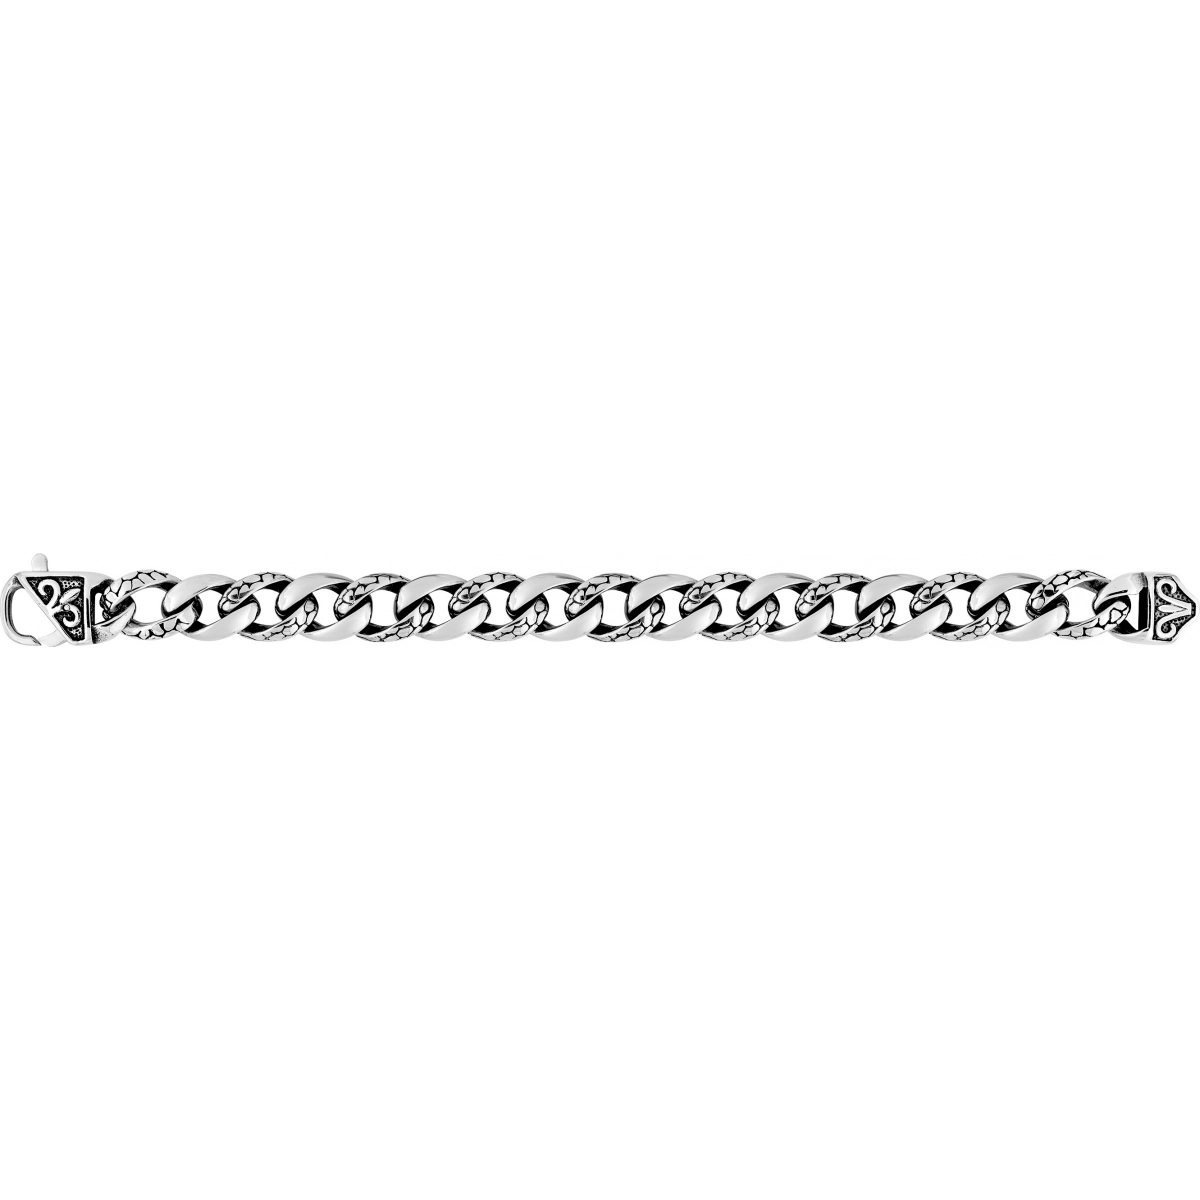 Bracelet Blackening effect steel color st.steel Lua Blanca  554629I - Size 22